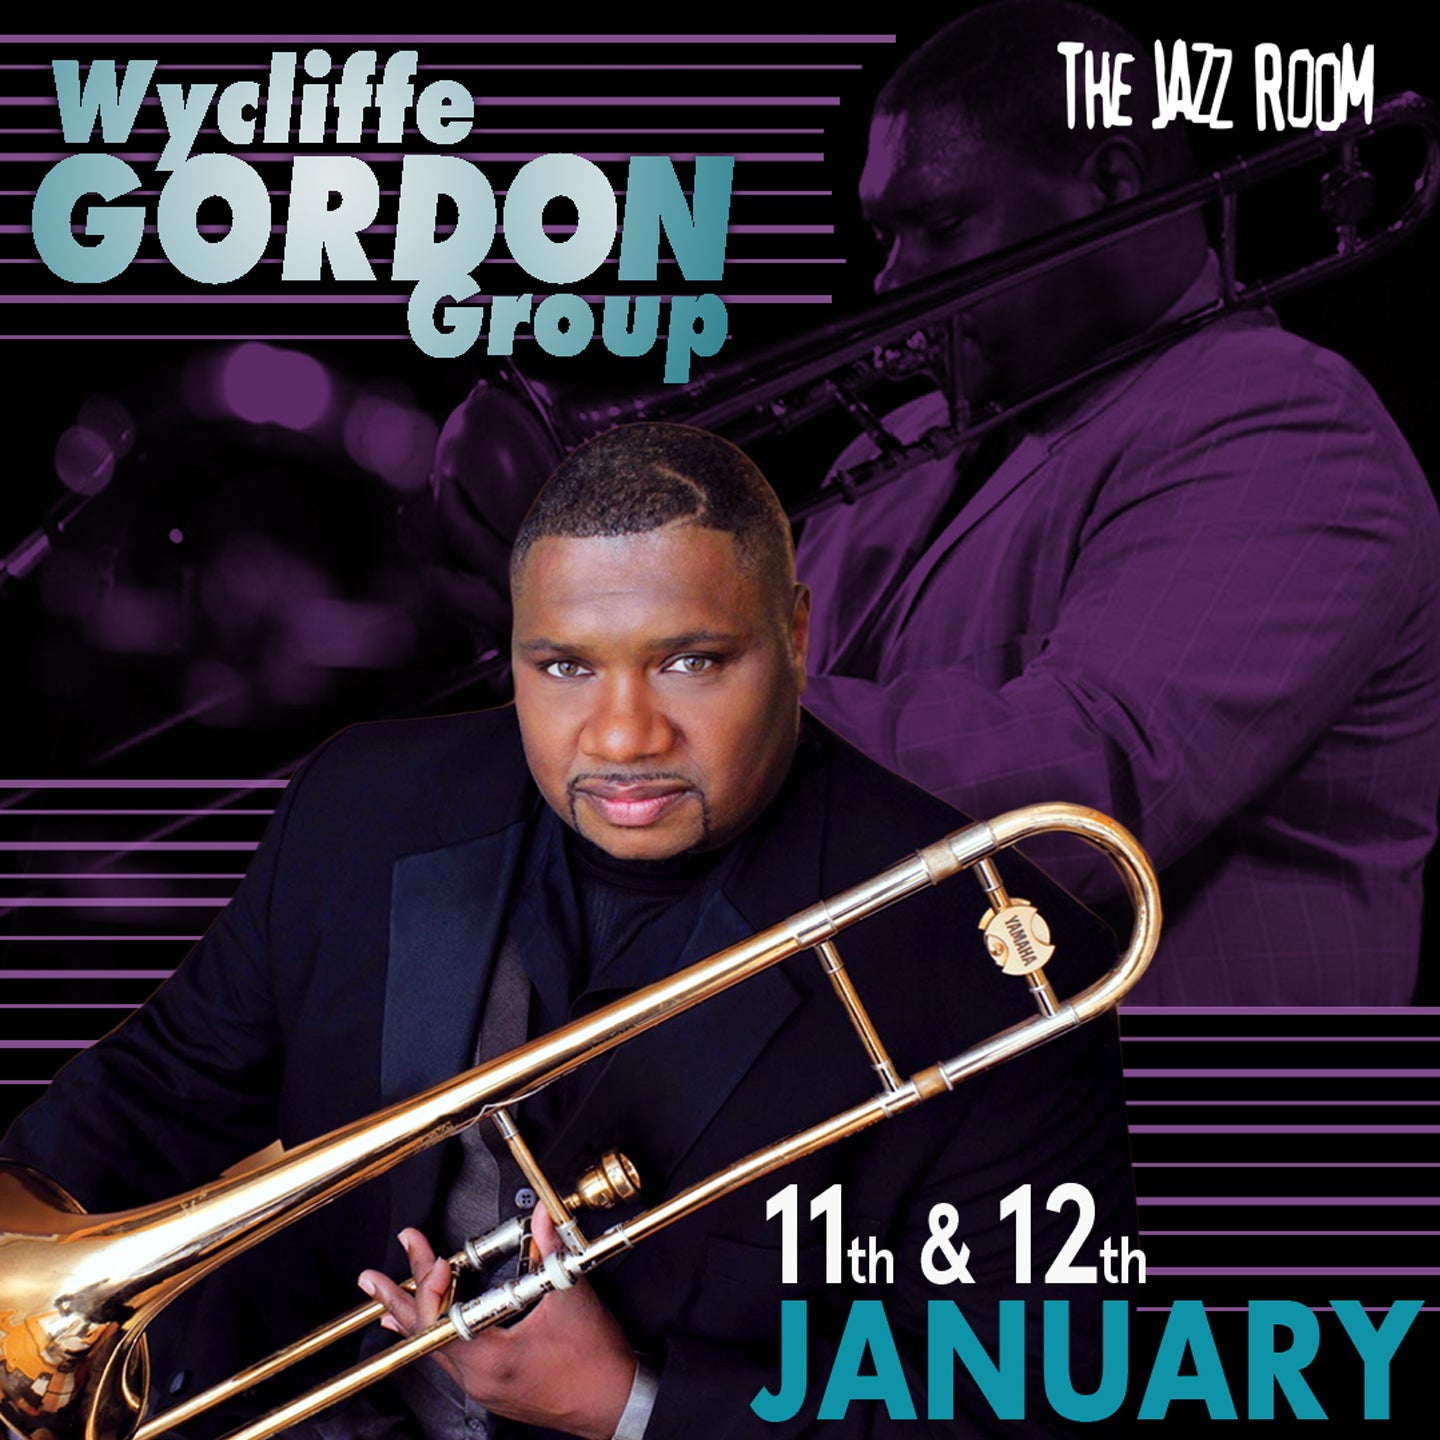 JAZZ ROOM: Wycliffe Gordon Quartet